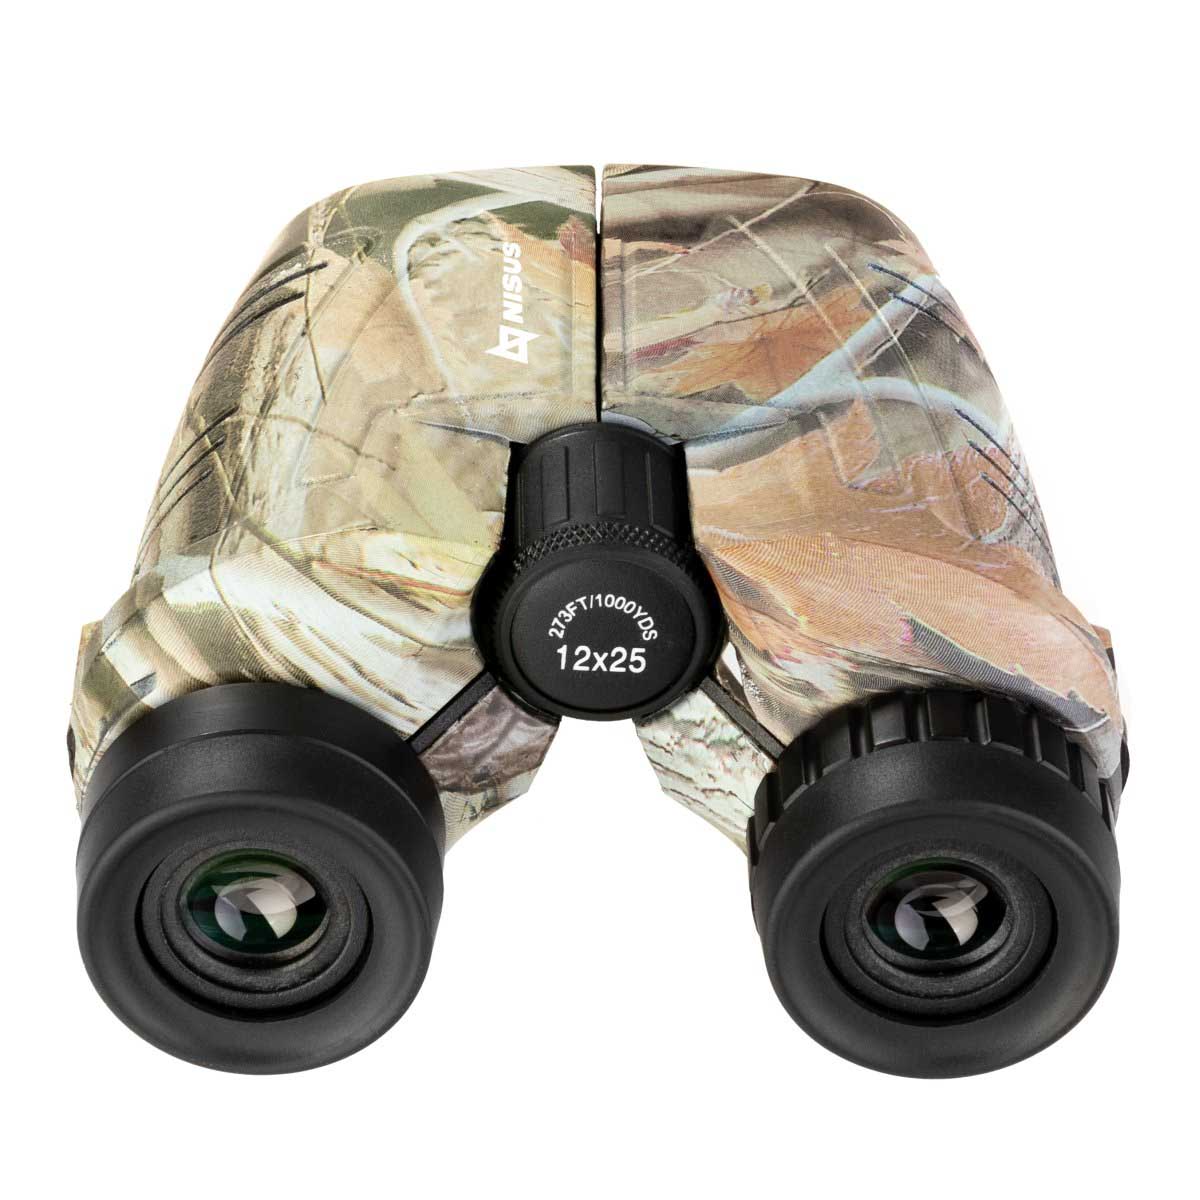 12x25 Large Hunting Compact Camo Binocular